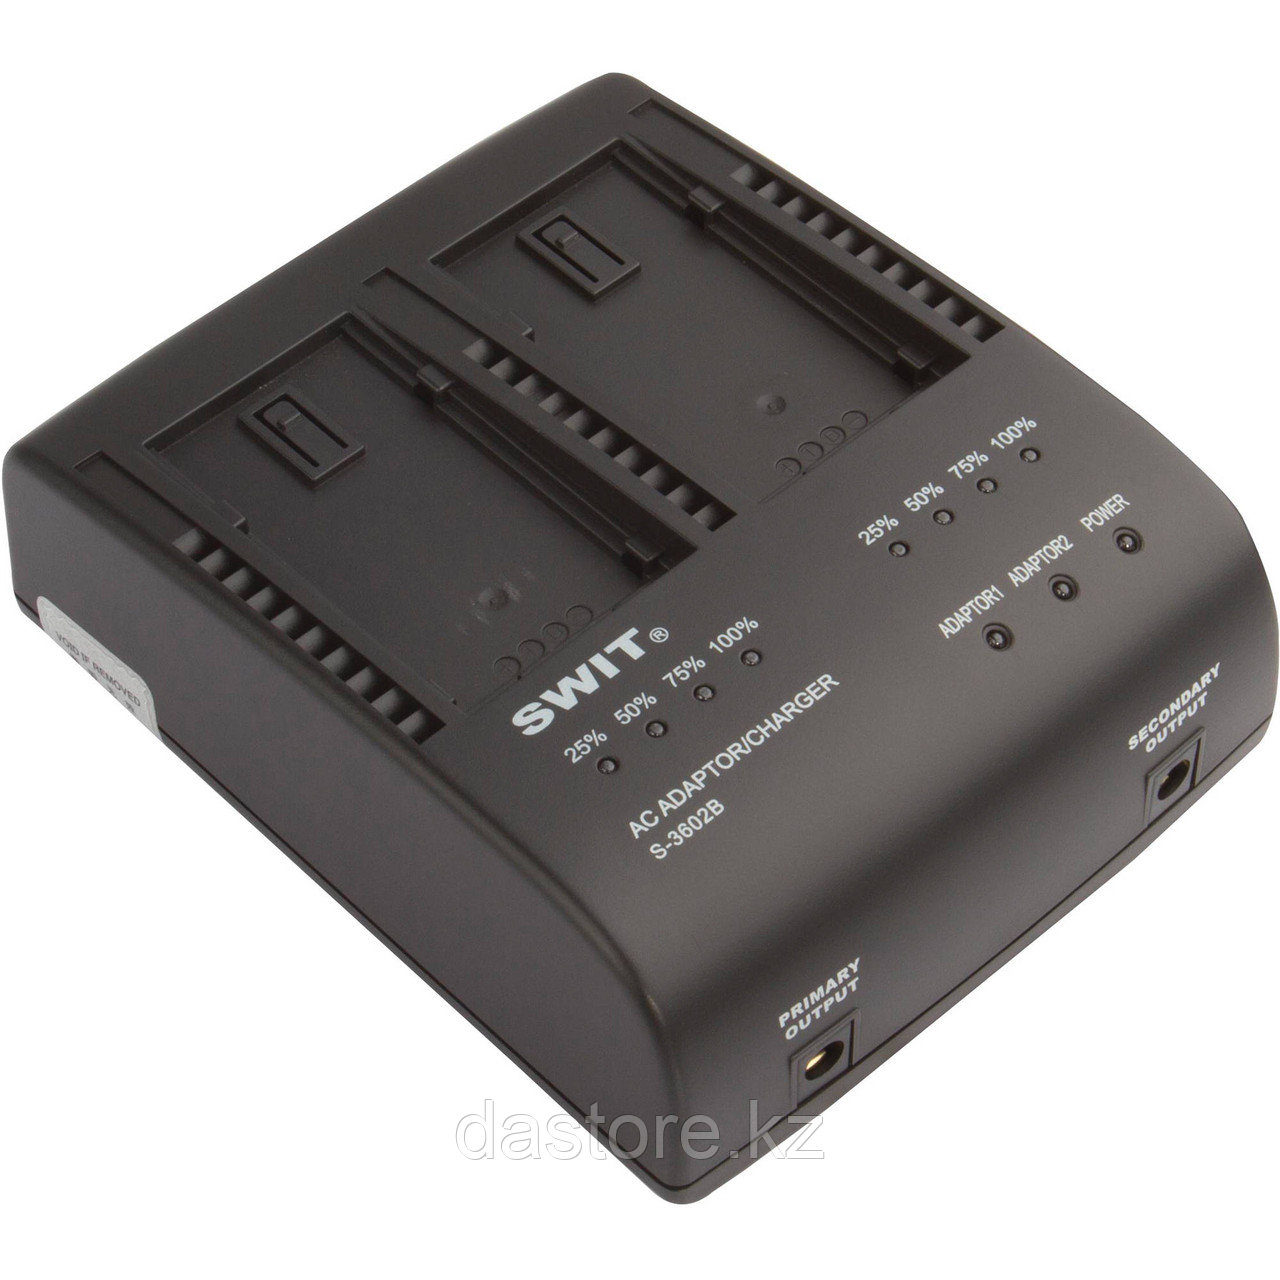 SWIT S-3602B двухканальное зарядное устройство для аккумуляторов Panasonic VBG6 и SWIT S-8BG6